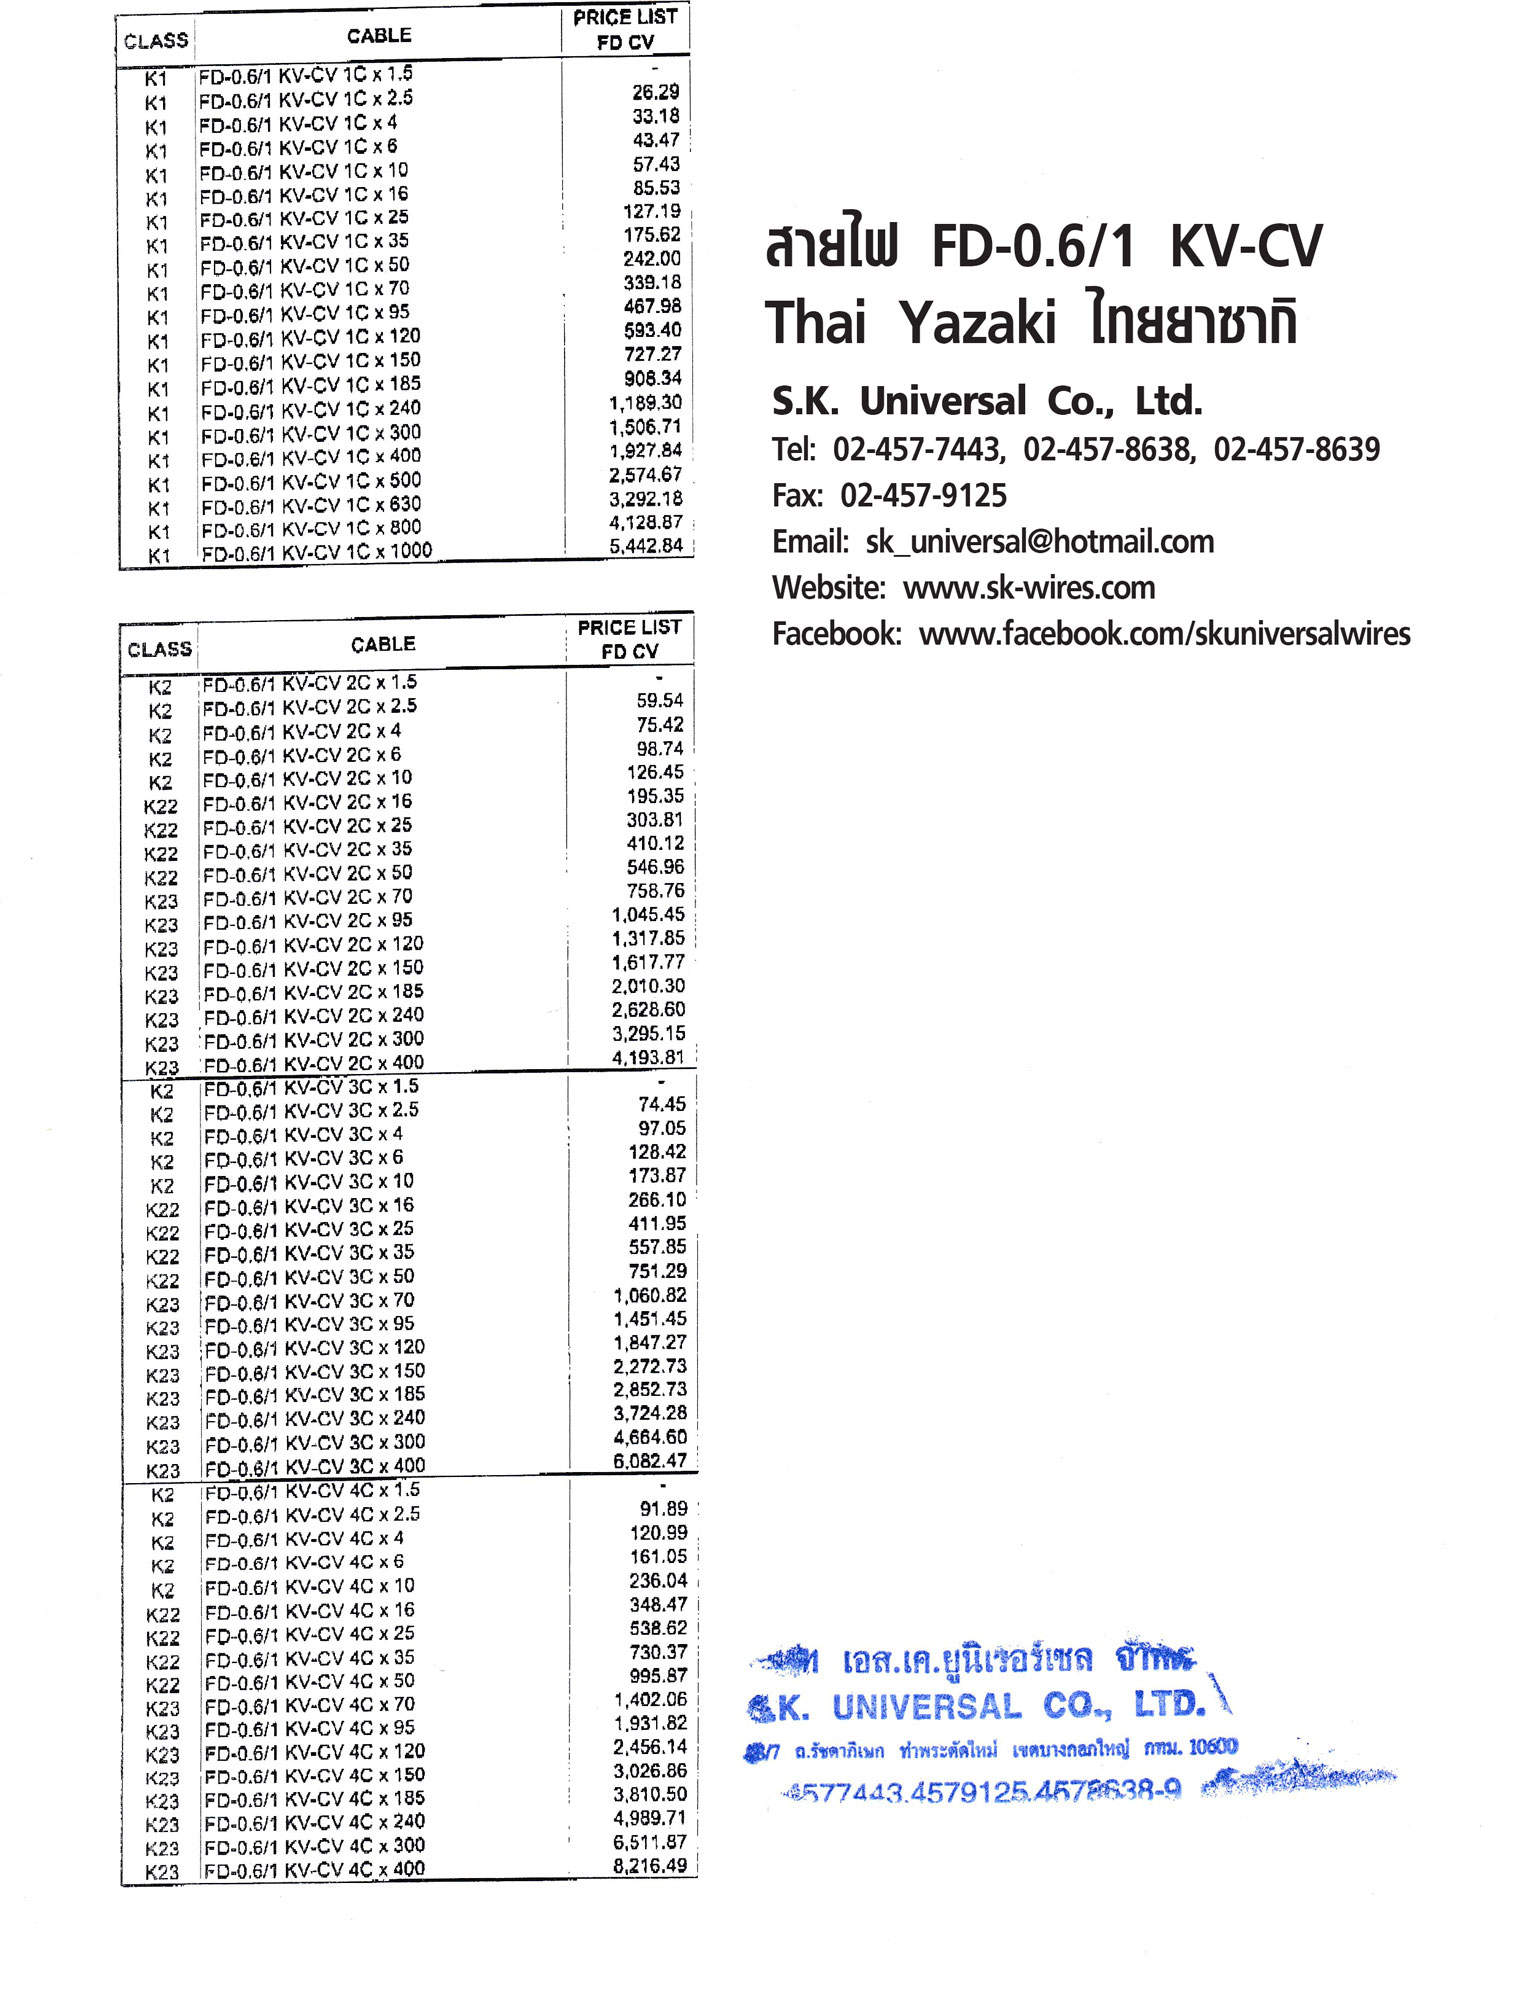 ราคาตั้ง สายไฟ FD-0.6/1 KV-CV Thai Yazaki (Price List)